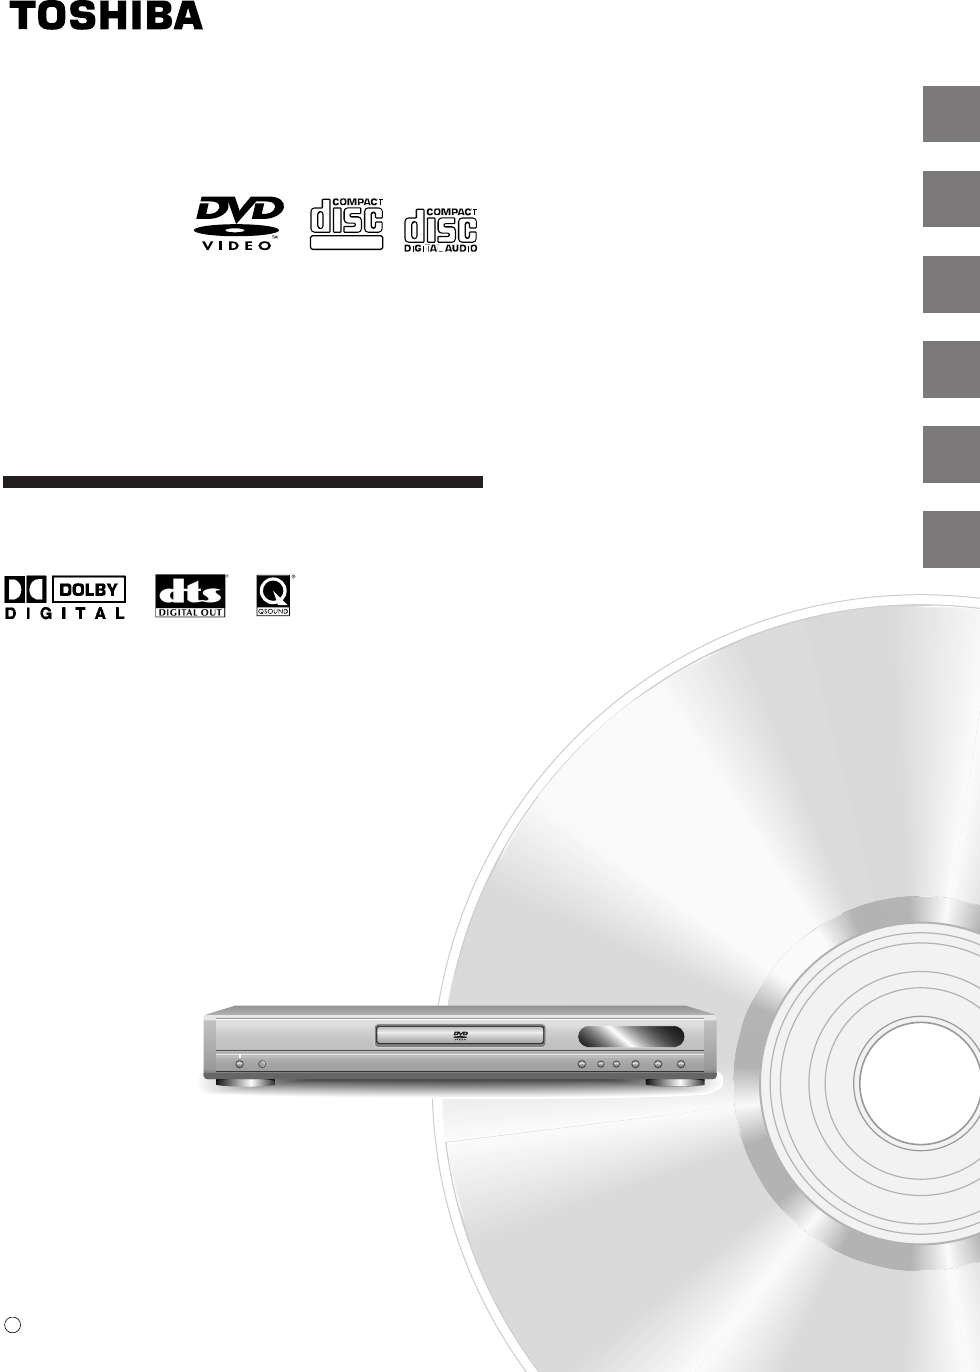 Toshiba DVD Player SD-310V User's Guide | ManualsOnline.com